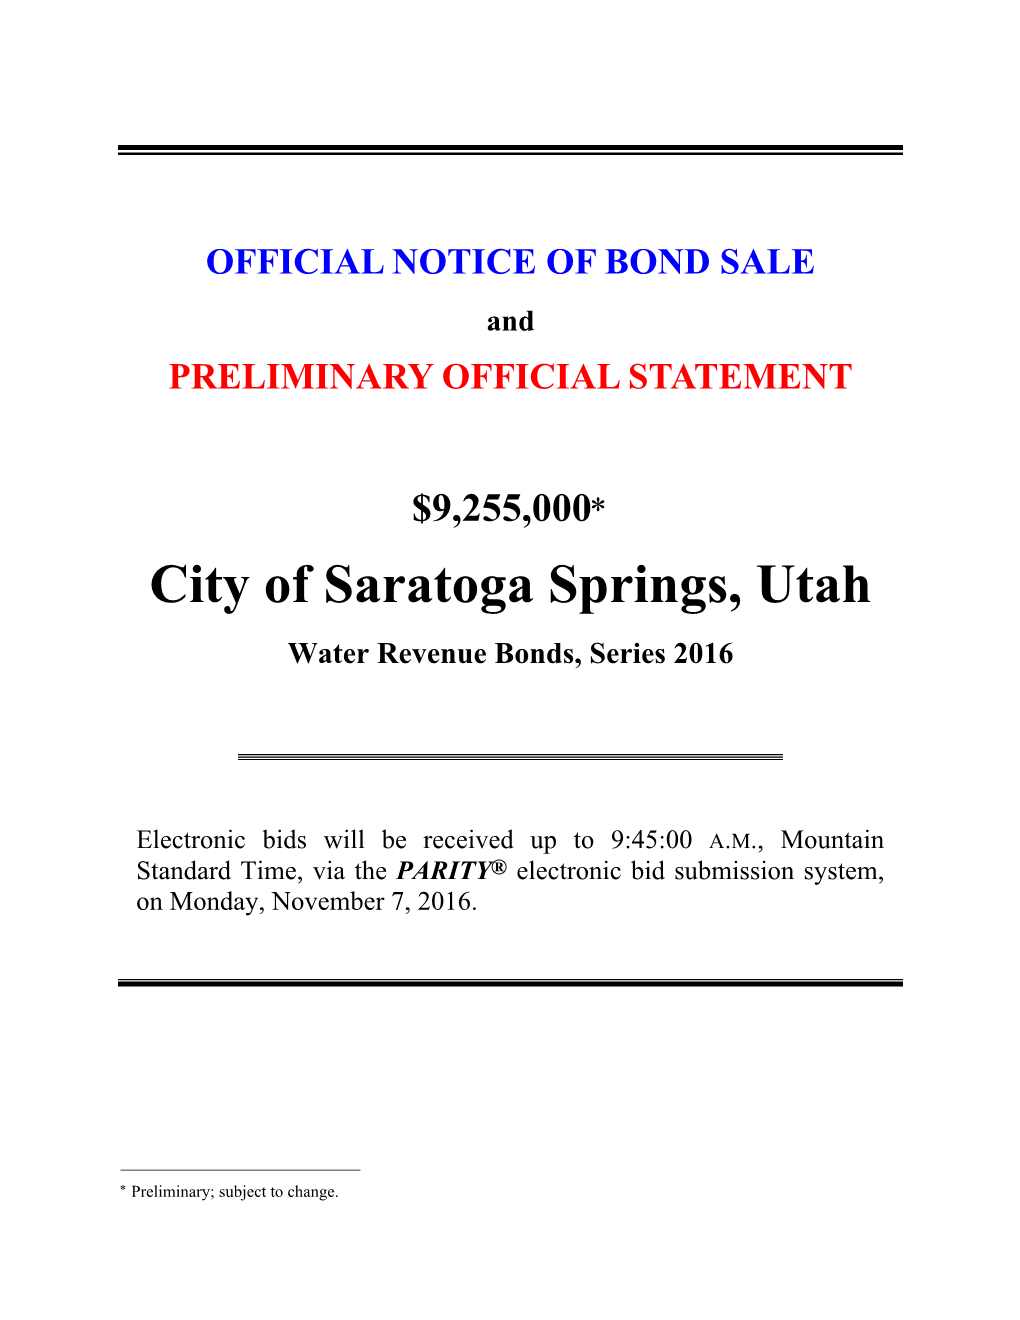 City of Saratoga Springs, Utah